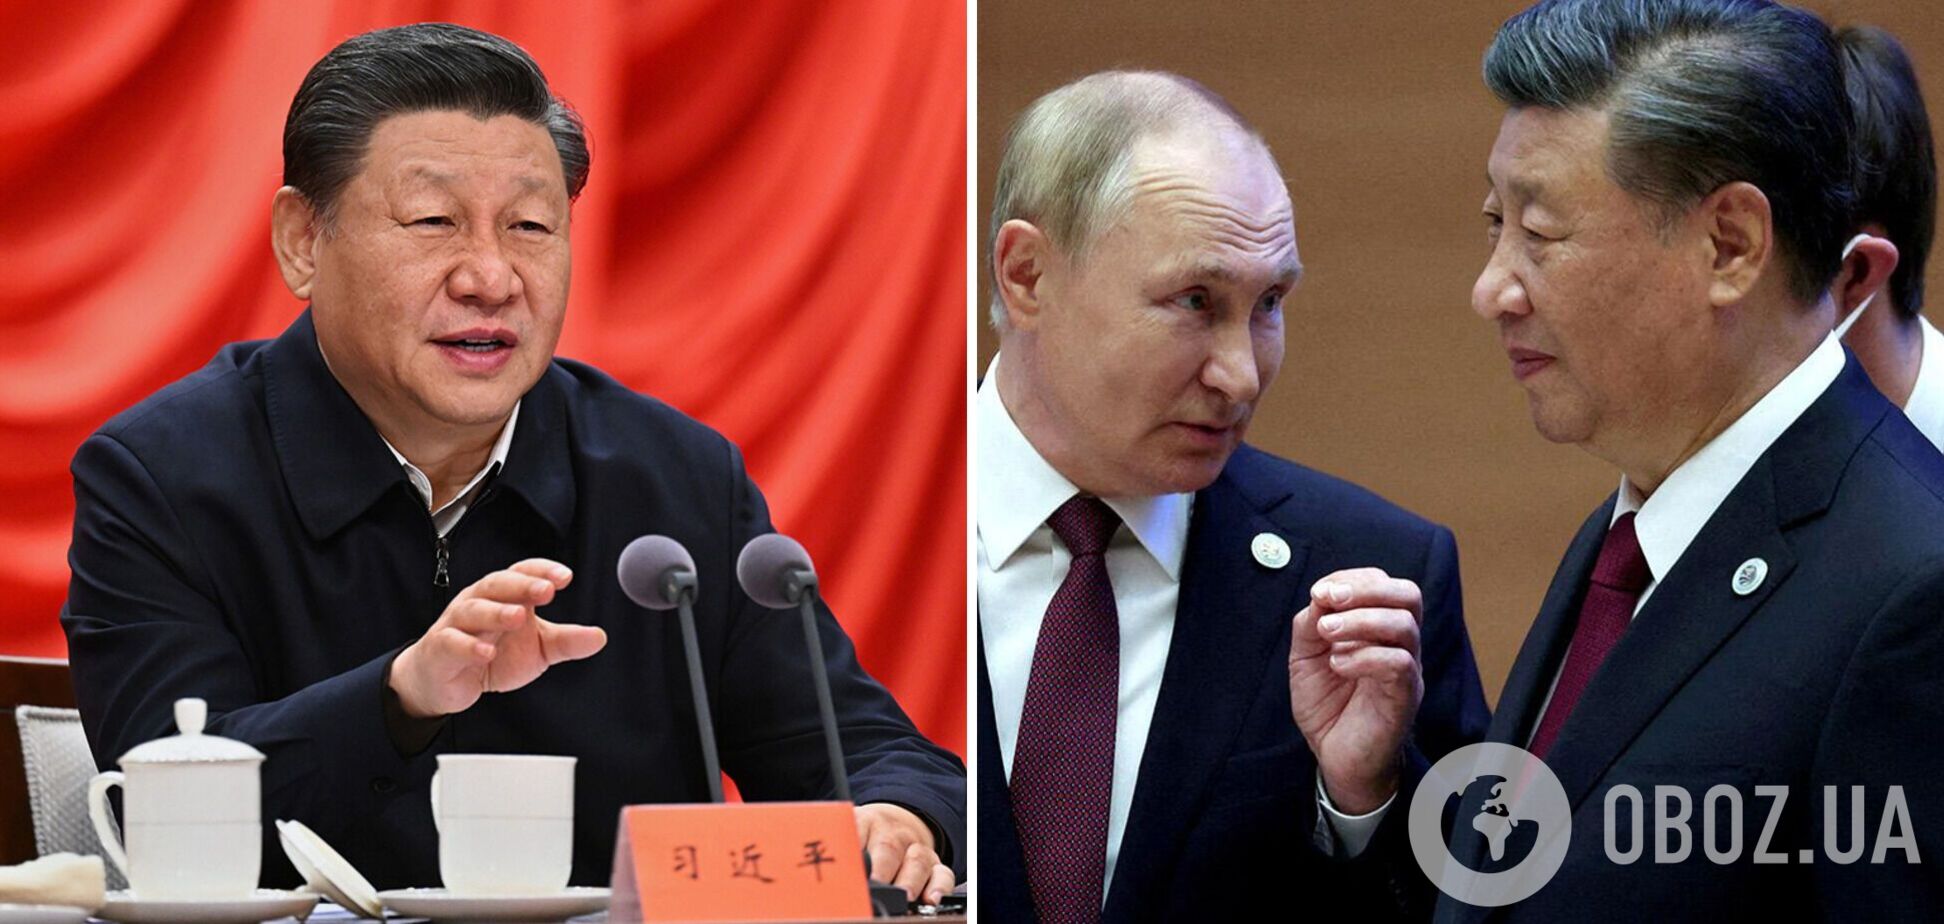 Си Цзиньпин перед визитом в Москву выступил со статьей в росСМИ: говорил о 'вечной дружбе' с Россией и взаимовыгодном сотрудничестве